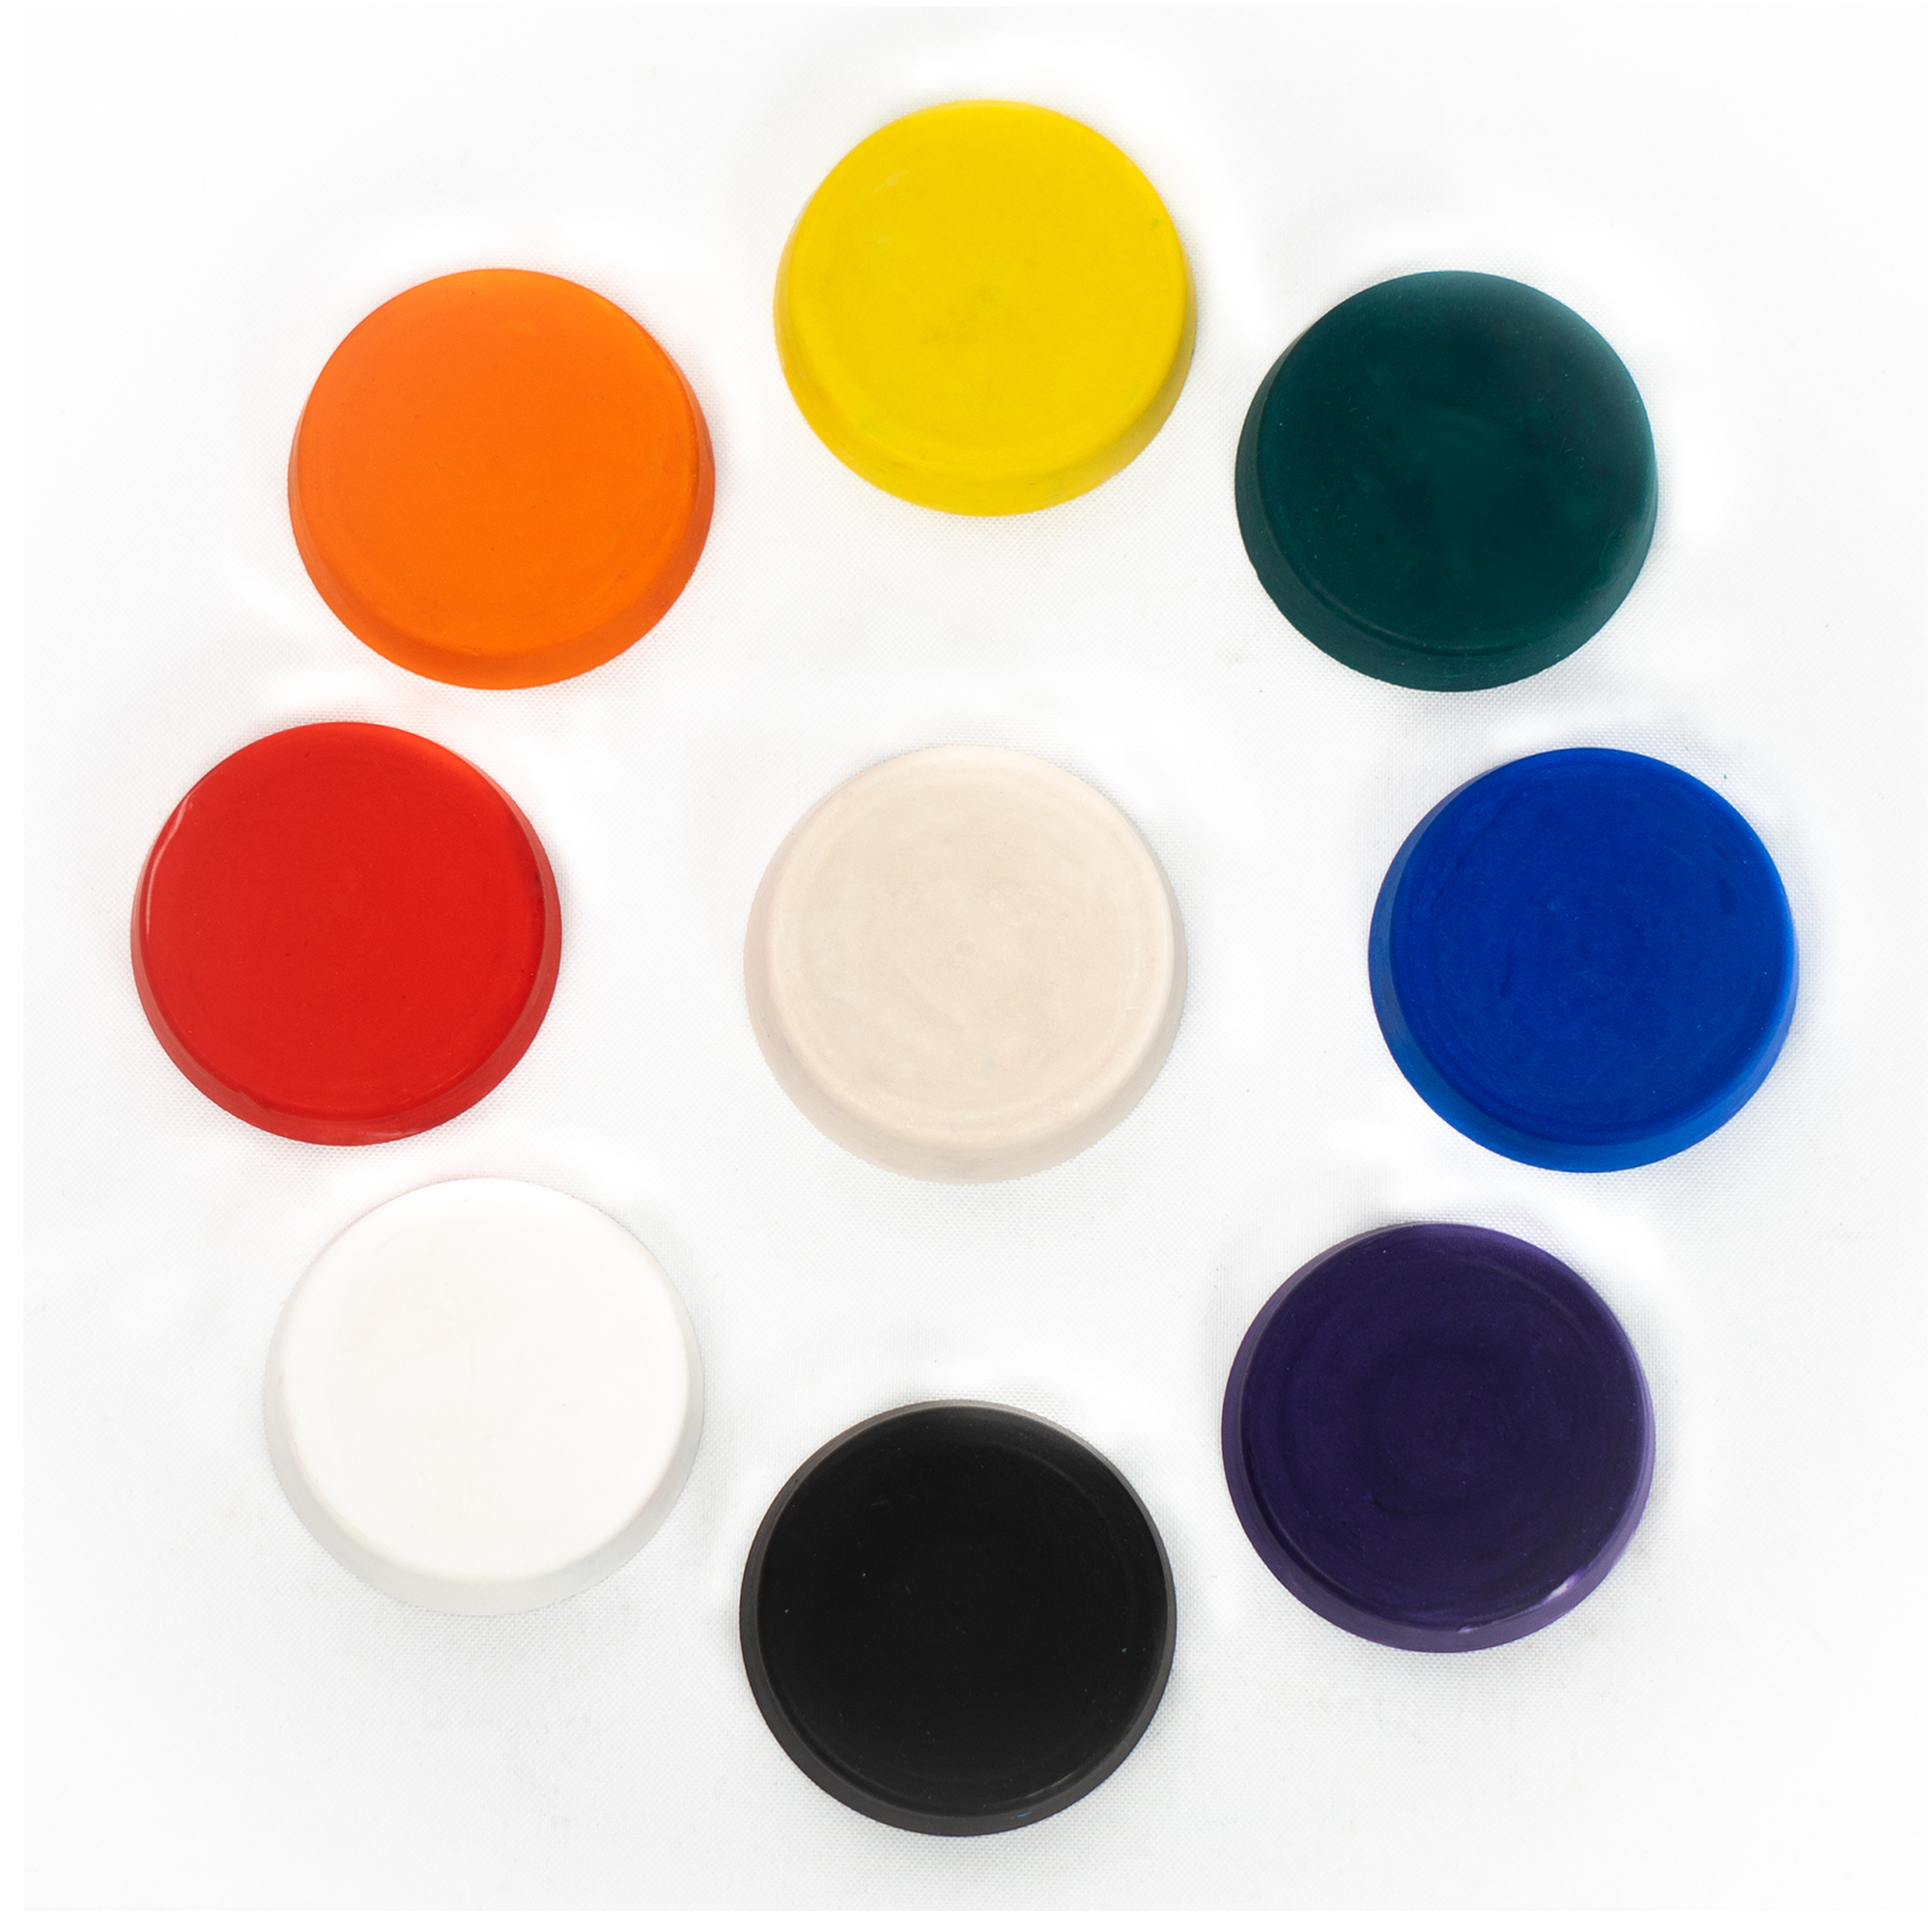 Razzo Pigment Colors perfect for mineral casting compounds like Jesmonite